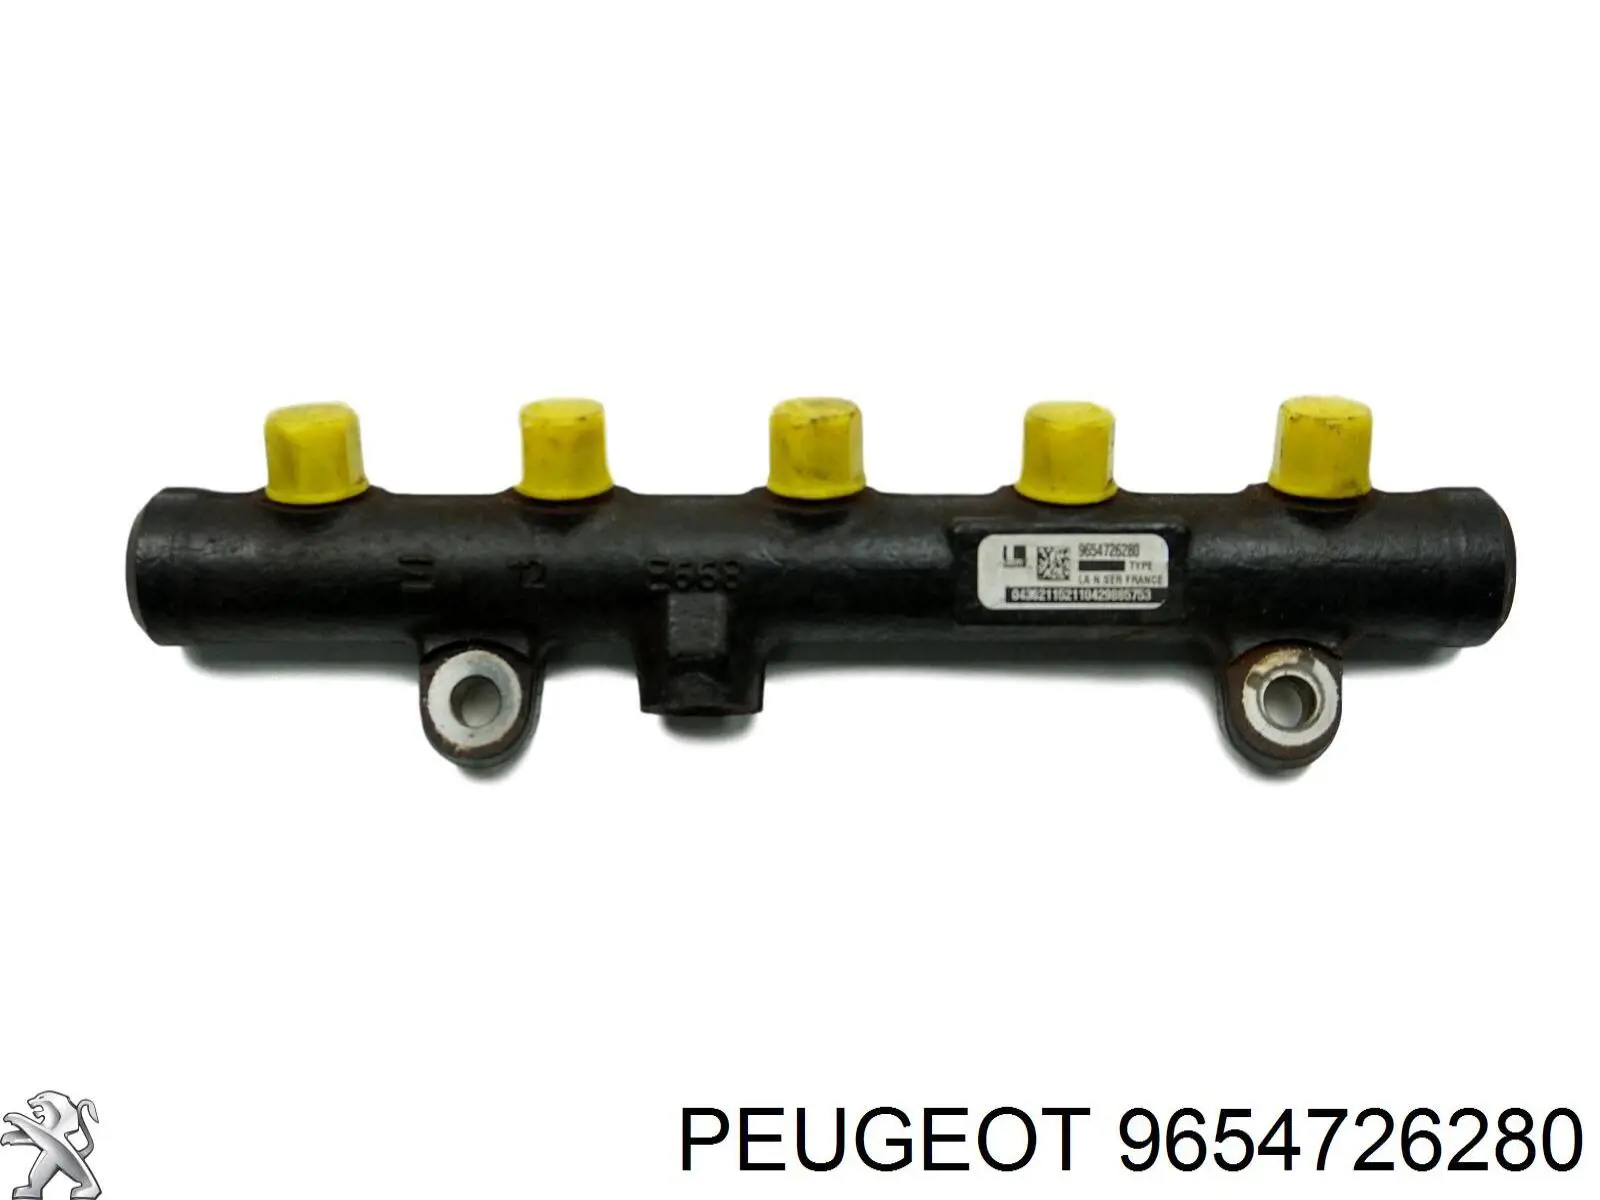 9654726280 Peugeot/Citroen rampa de inyectores